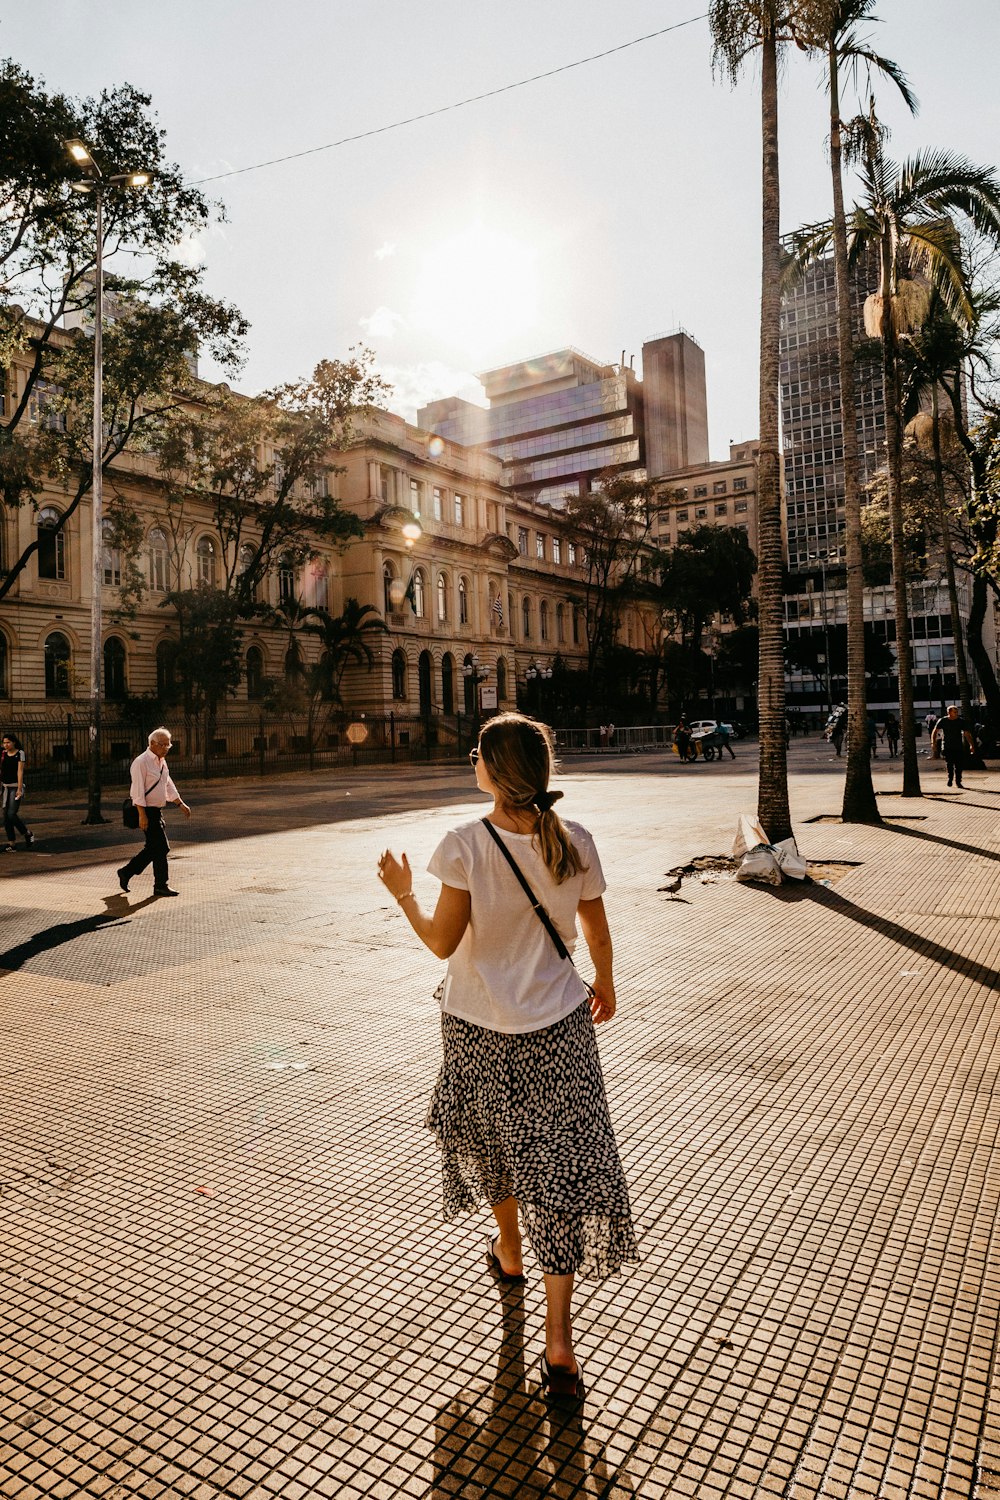 woman walking on road